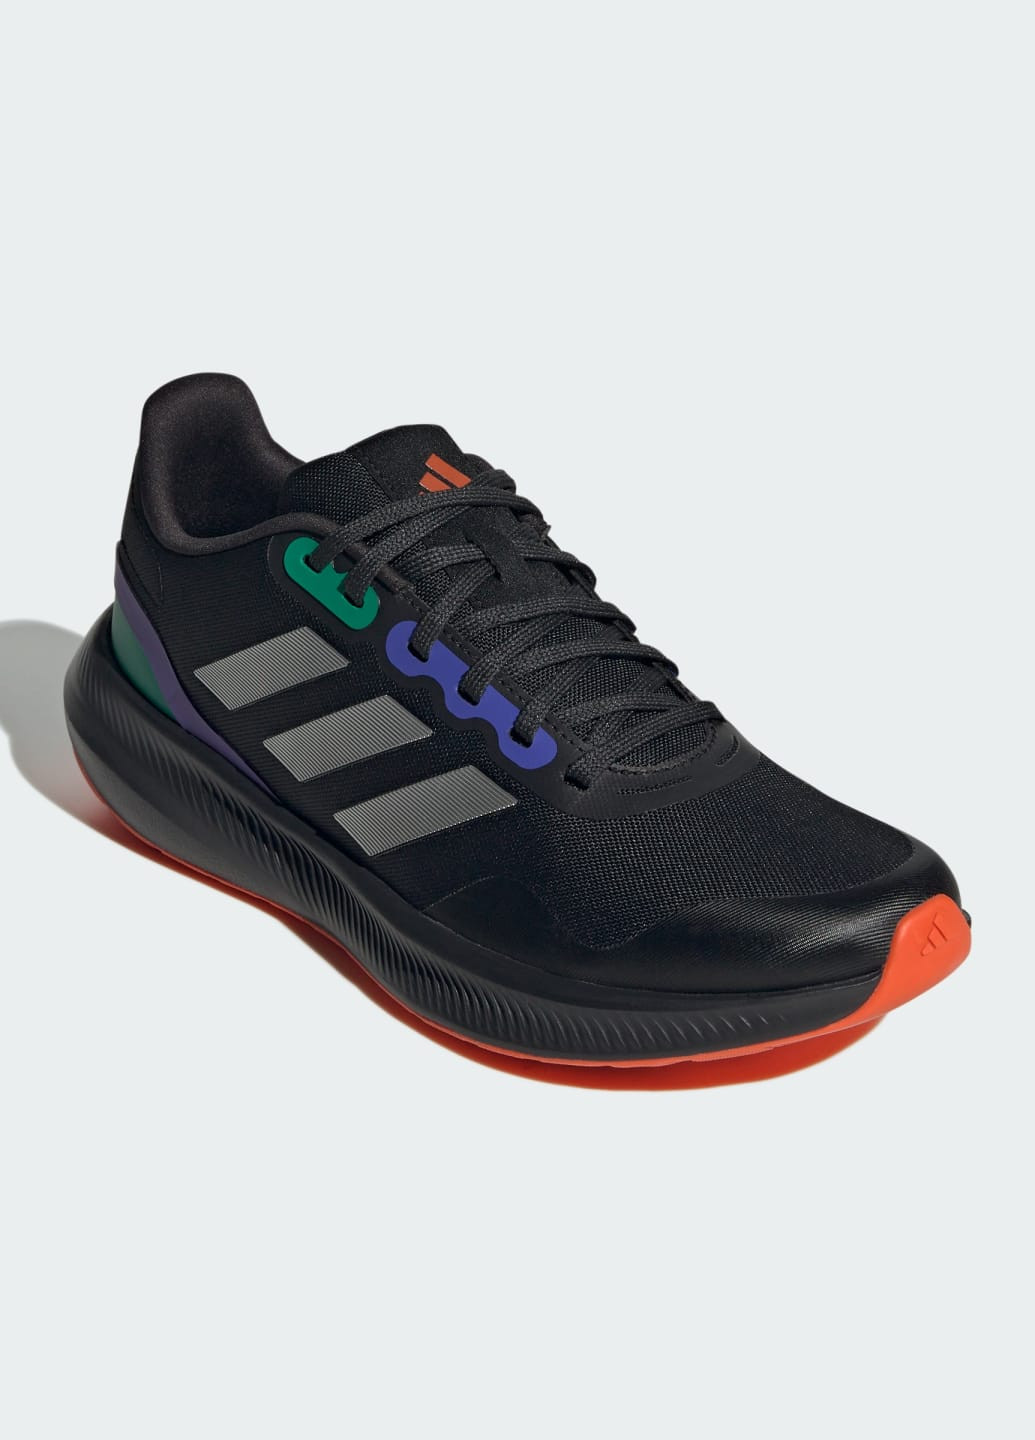 Черные всесезонные кроссовки runfalcon 3 tr adidas